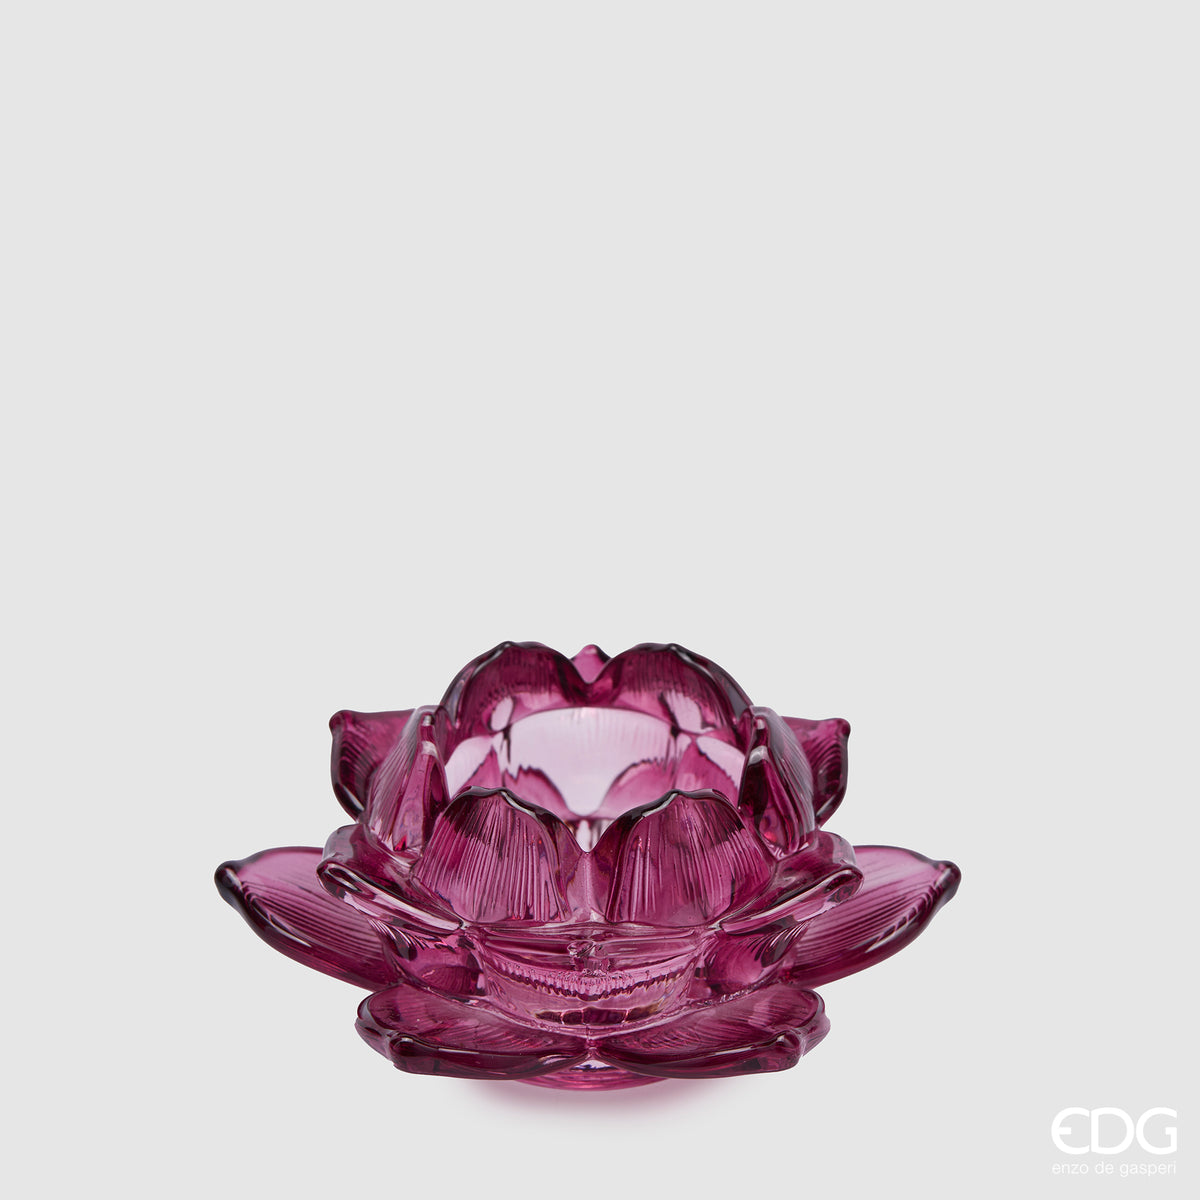 Edg - portacandela fiore di loto granata | rohome